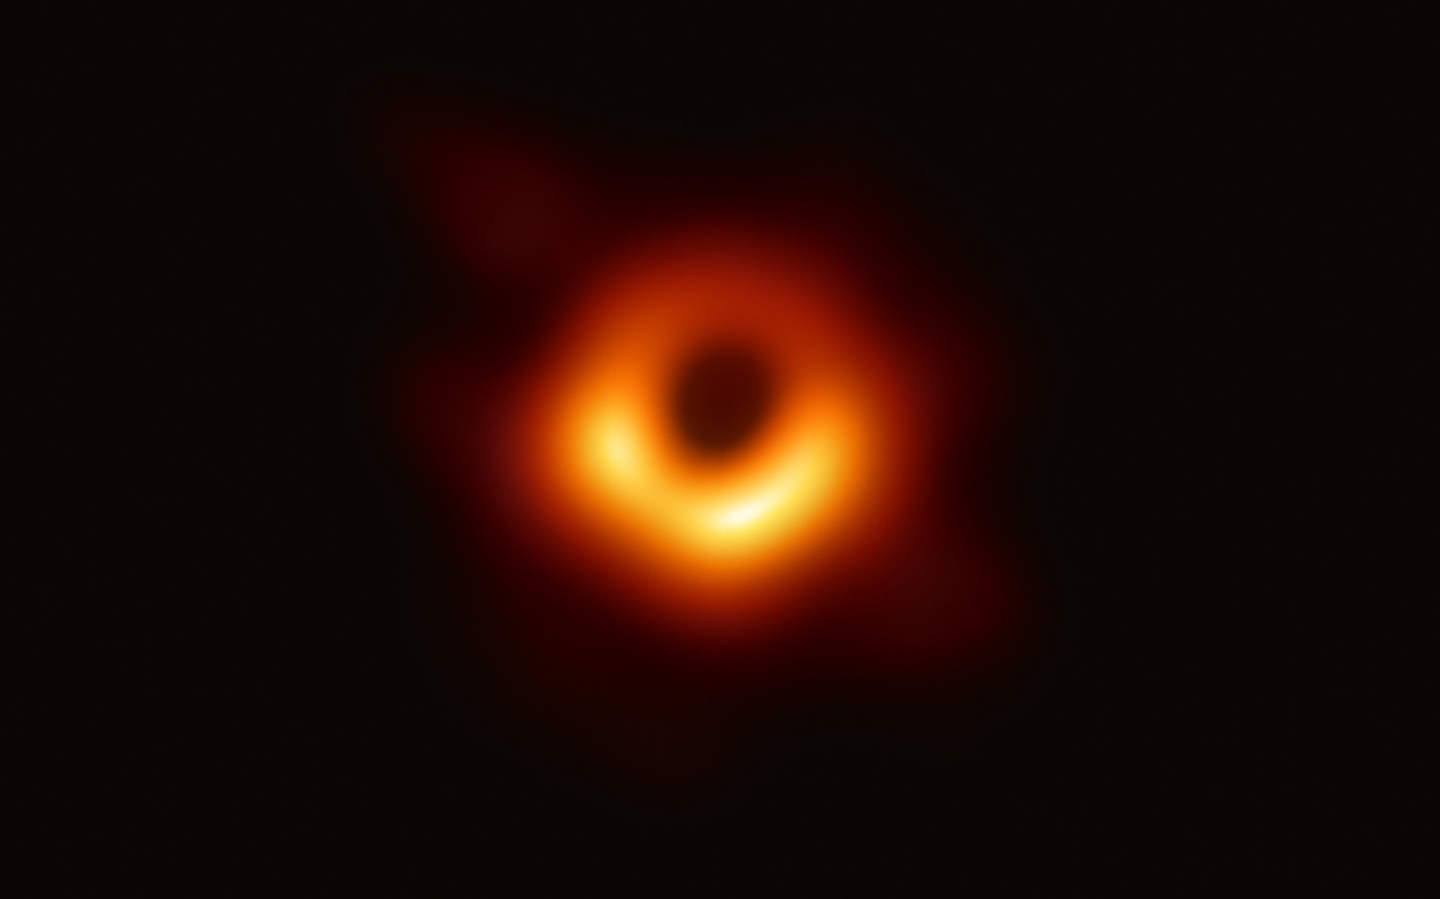 Wissenschaftlern gelingt mit dem „Event Horizon Telescope“ das erste Bild eines Schwarzen  Lochs im Zentrum der Galaxie M87